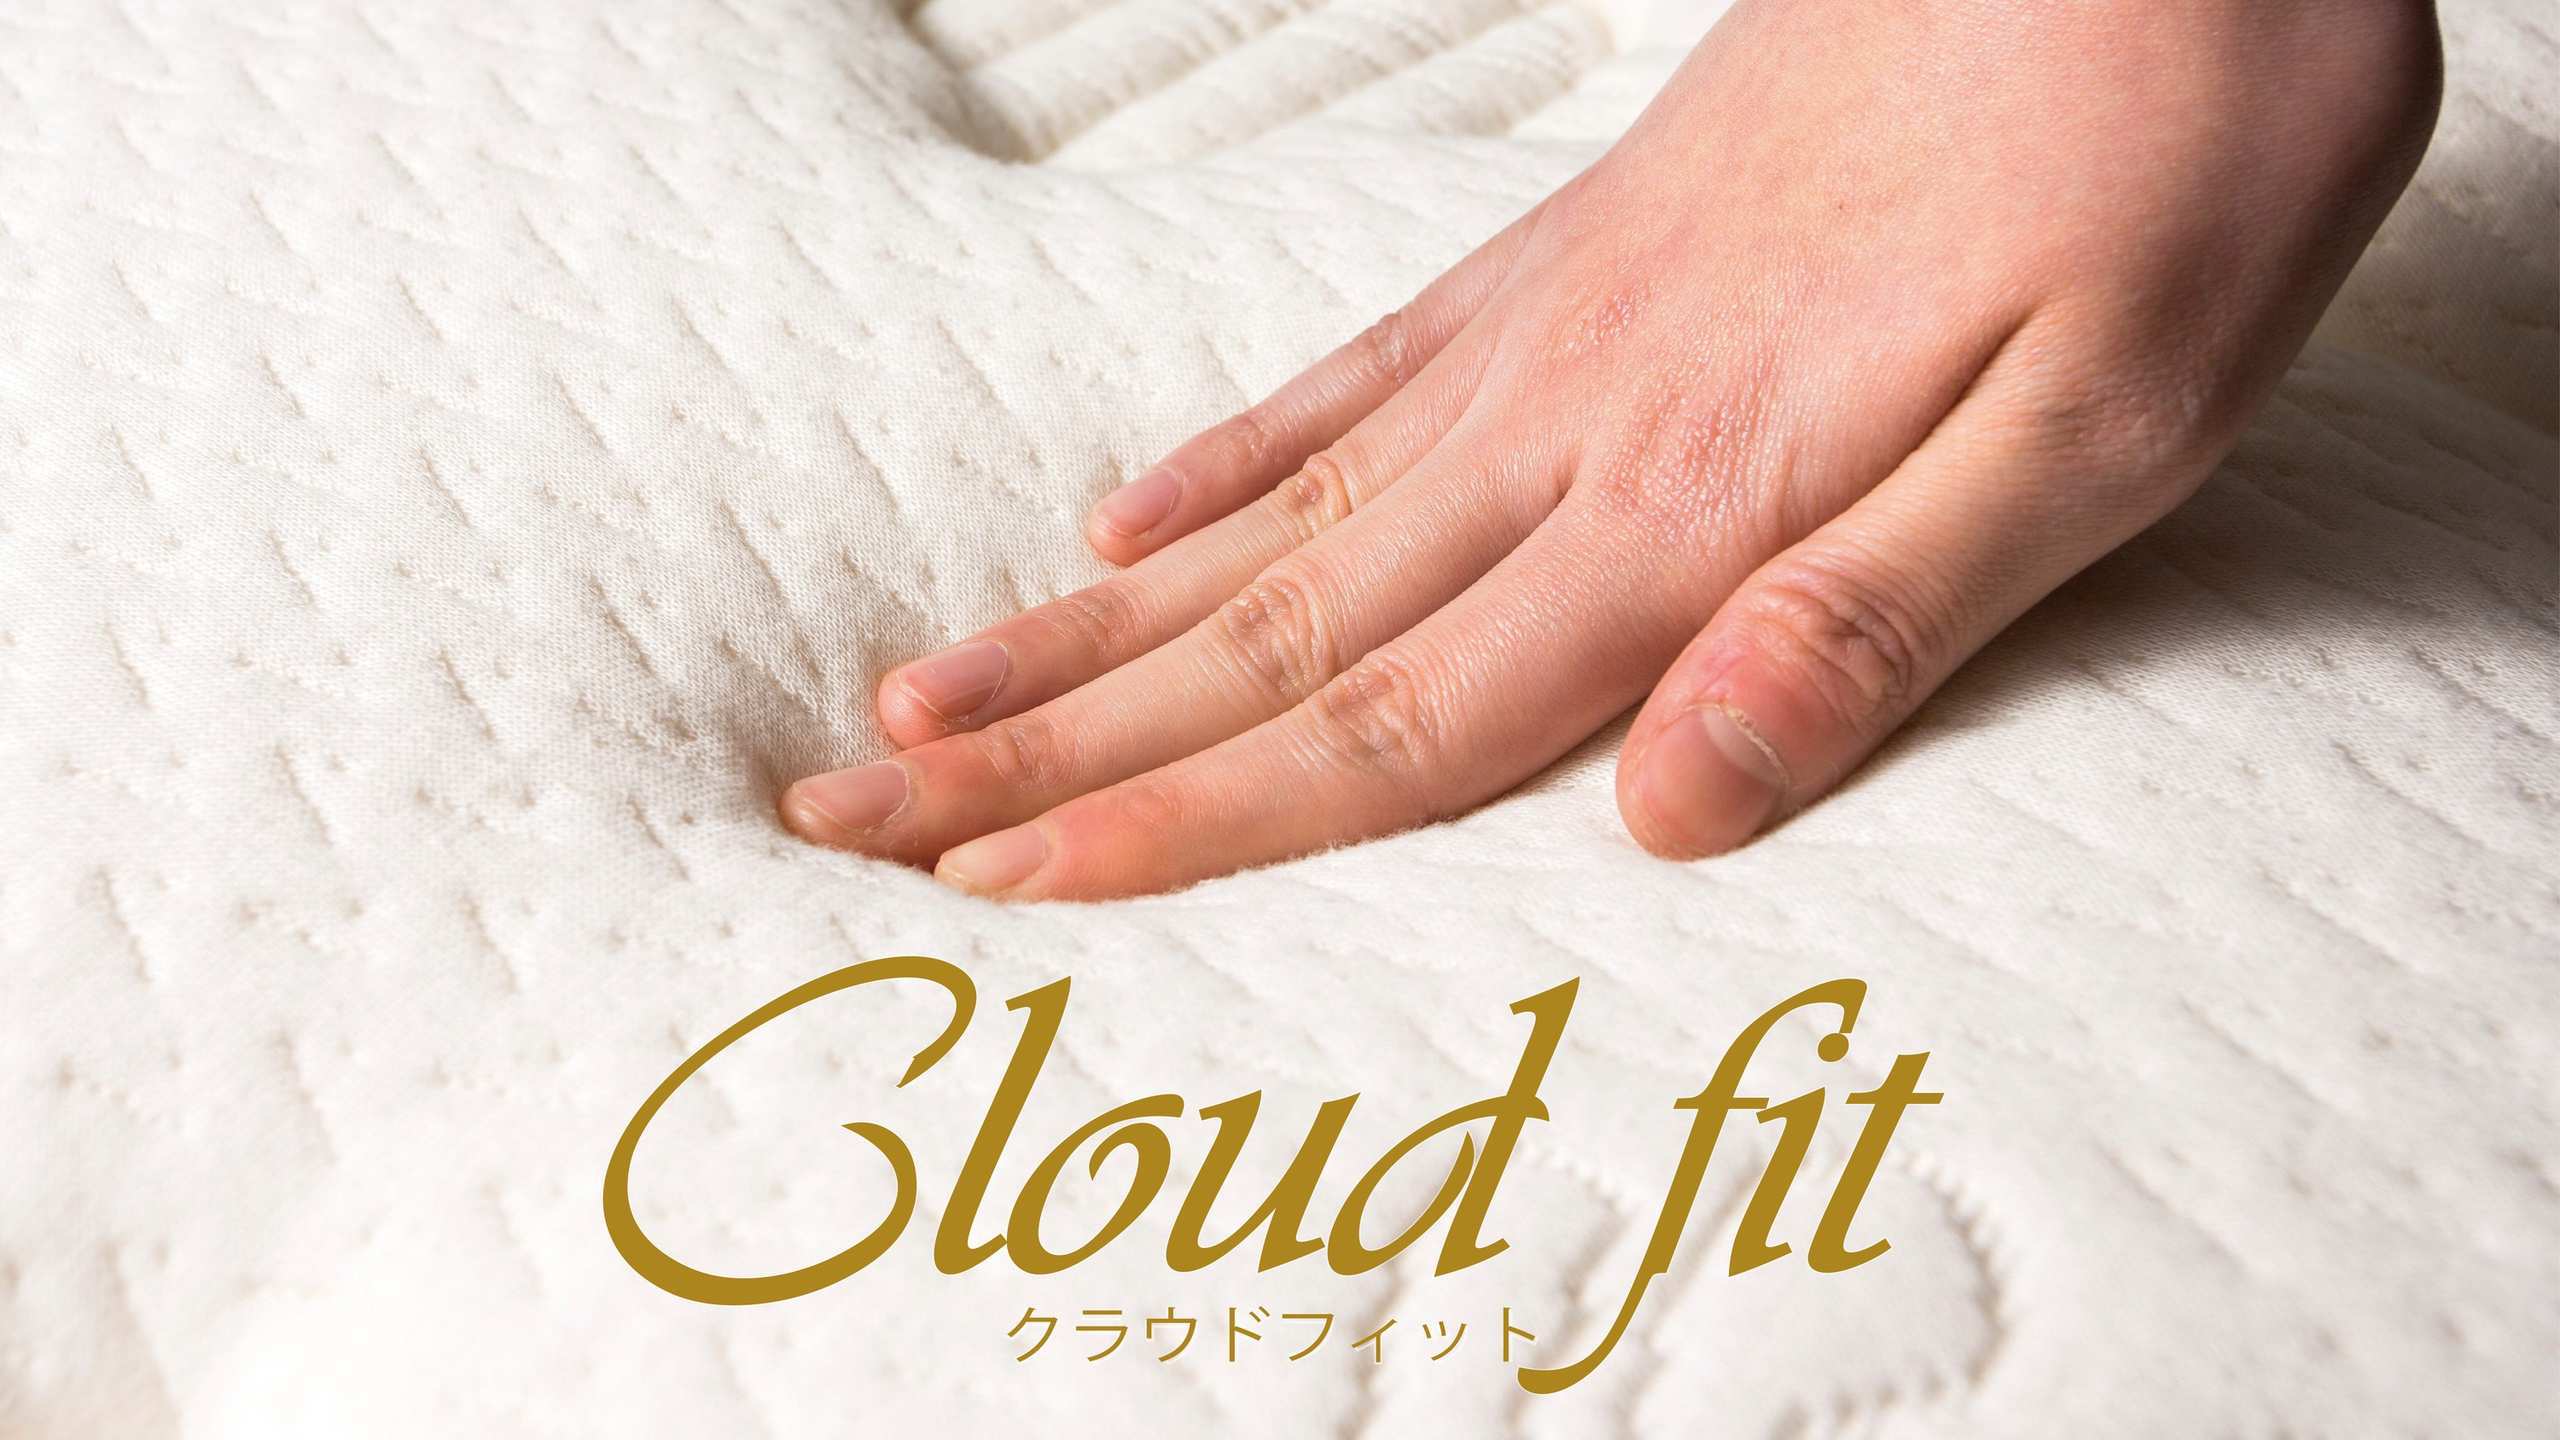 快眠を追求したアパホテルオリジナルベッド「Cloud fit」